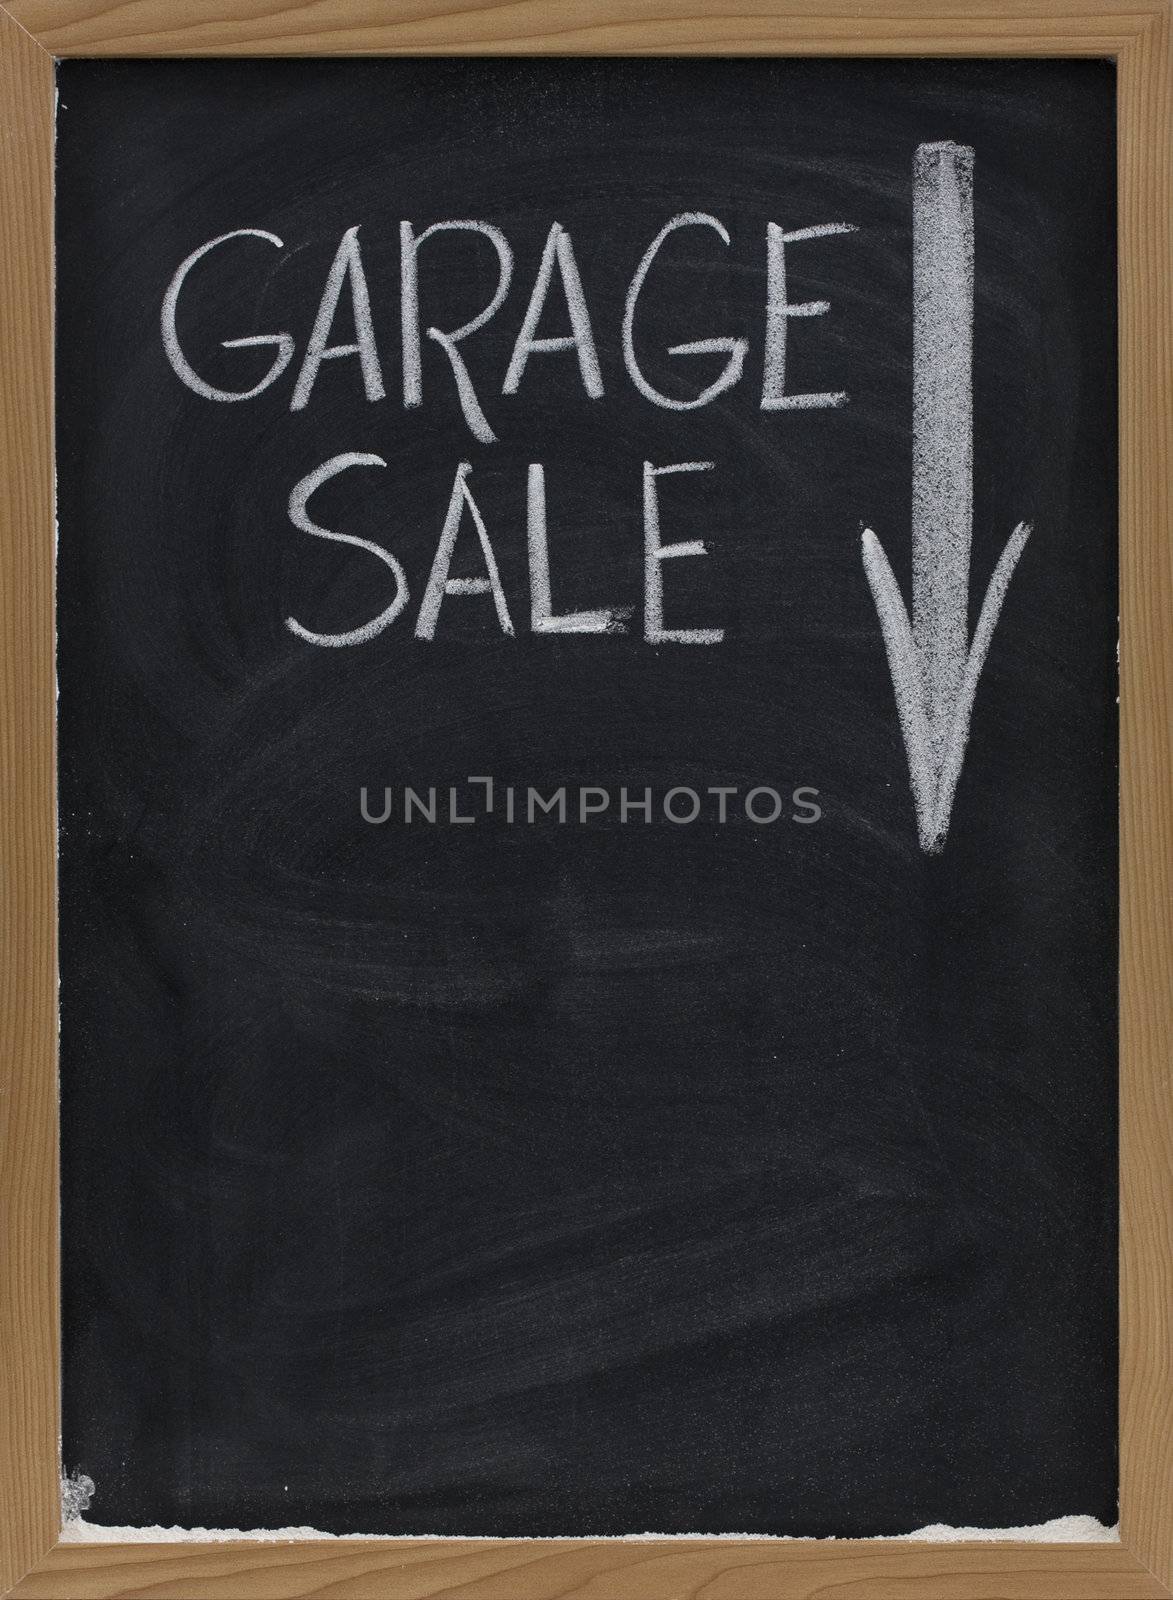 garage sale blackboard sign by PixelsAway